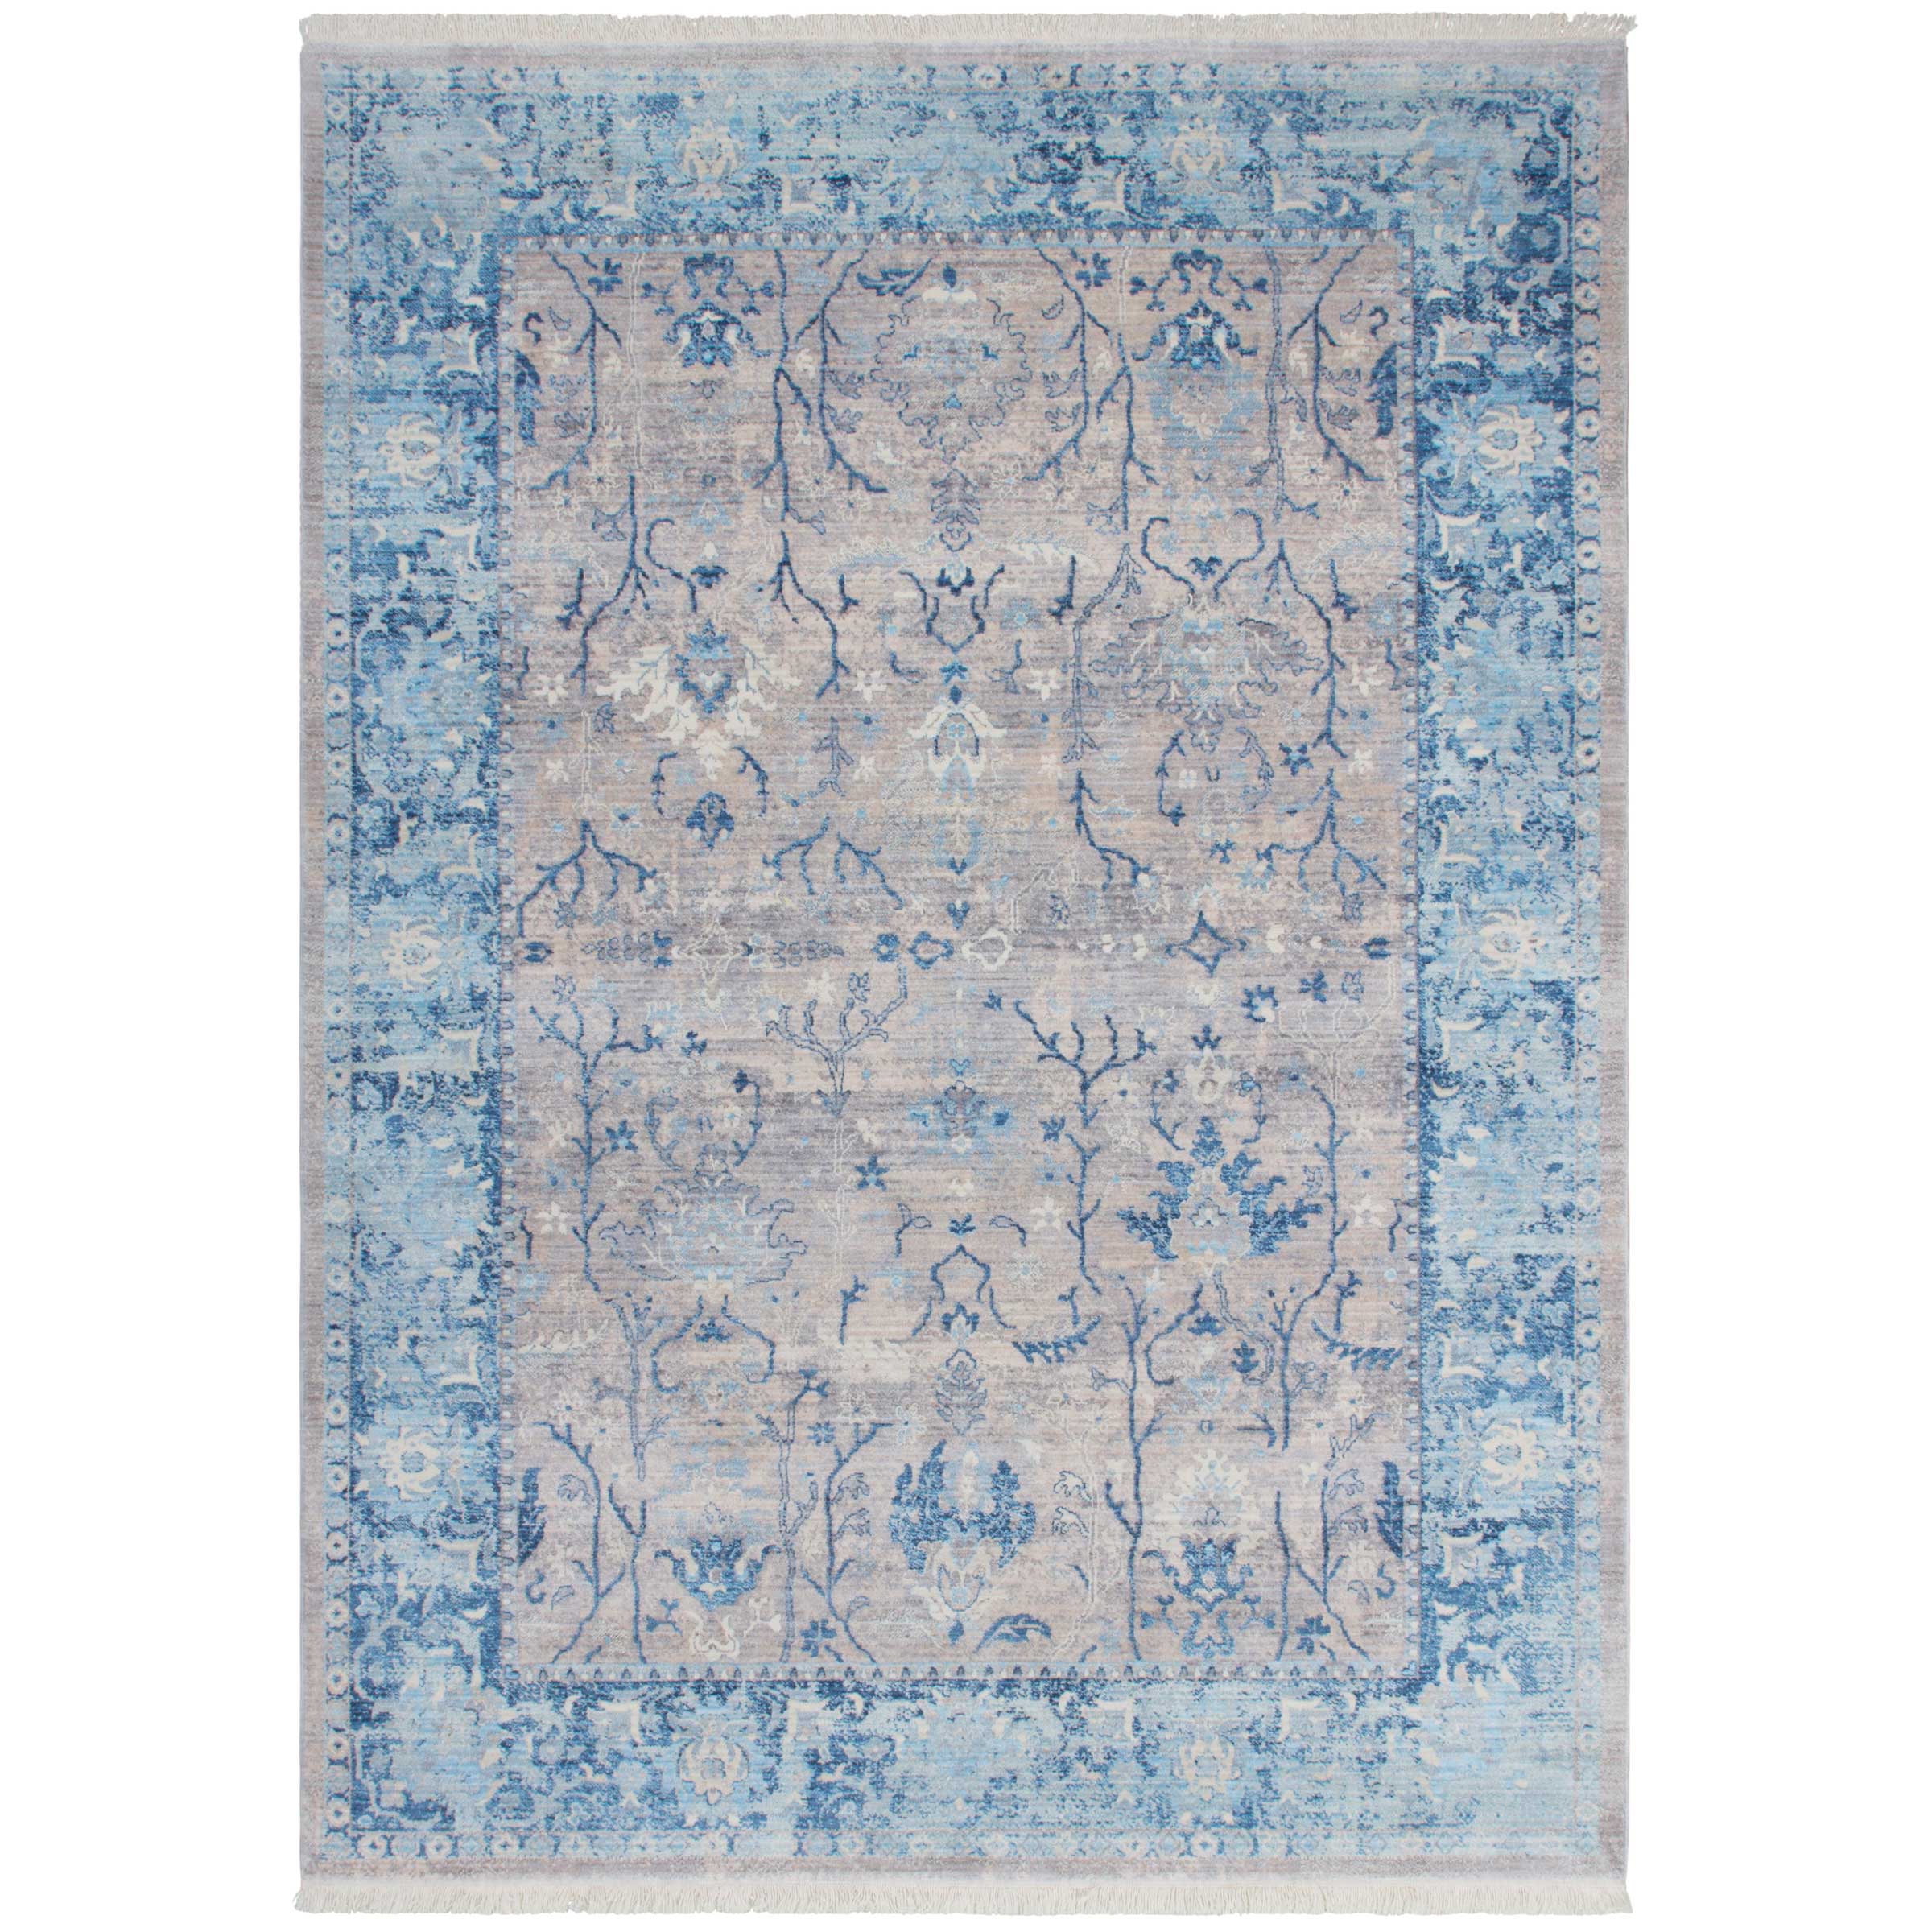 Wonderbaarlijk Turquoise blauw Perzisch vloerkleed kopen? | Blauwe Perzische tapijten MF-25